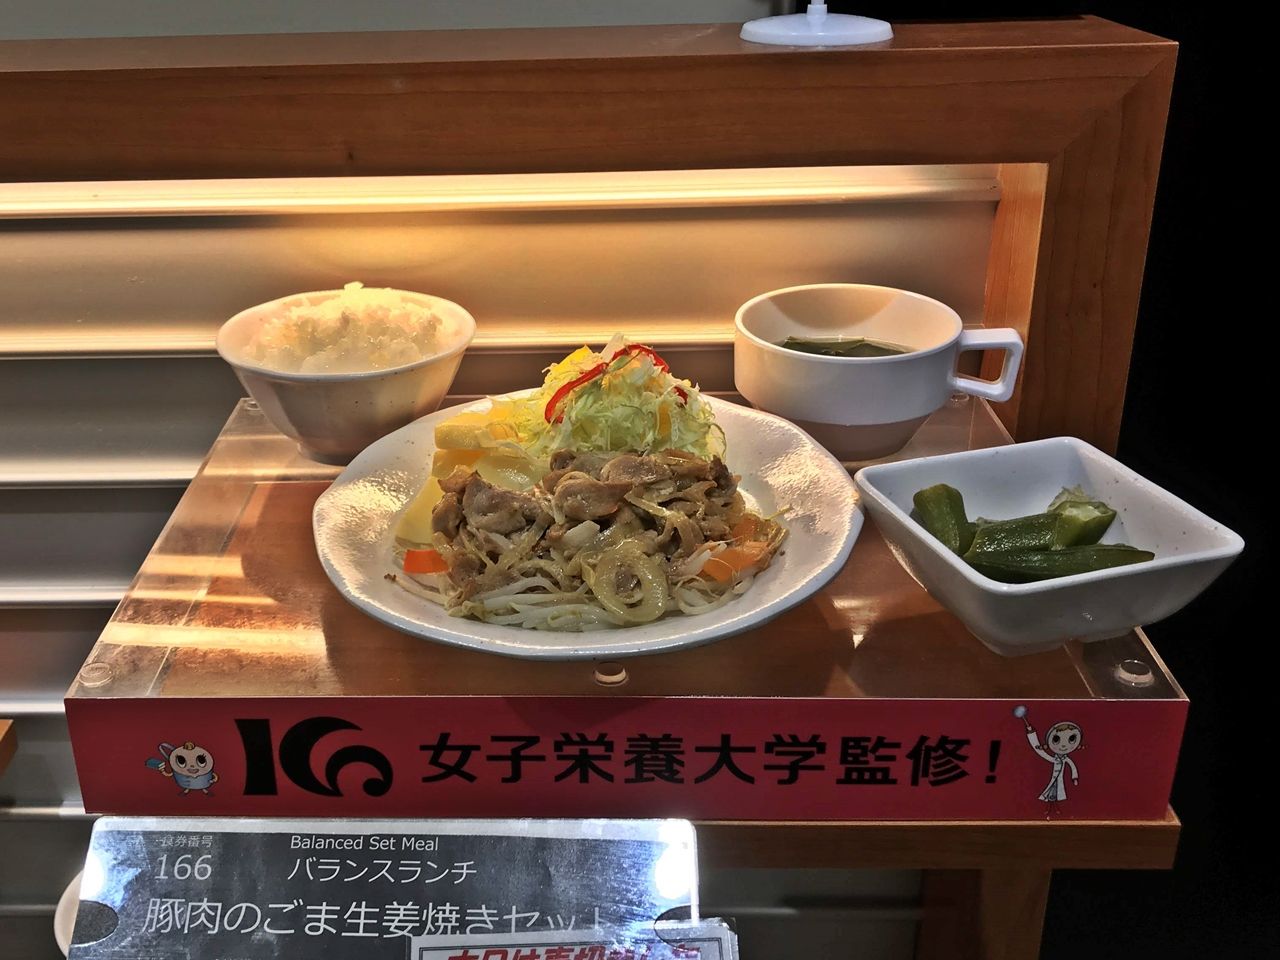 東京都庁の職員食堂で名物ランチと絶景を楽しもう 東京都 Lineトラベルjp 旅行ガイド